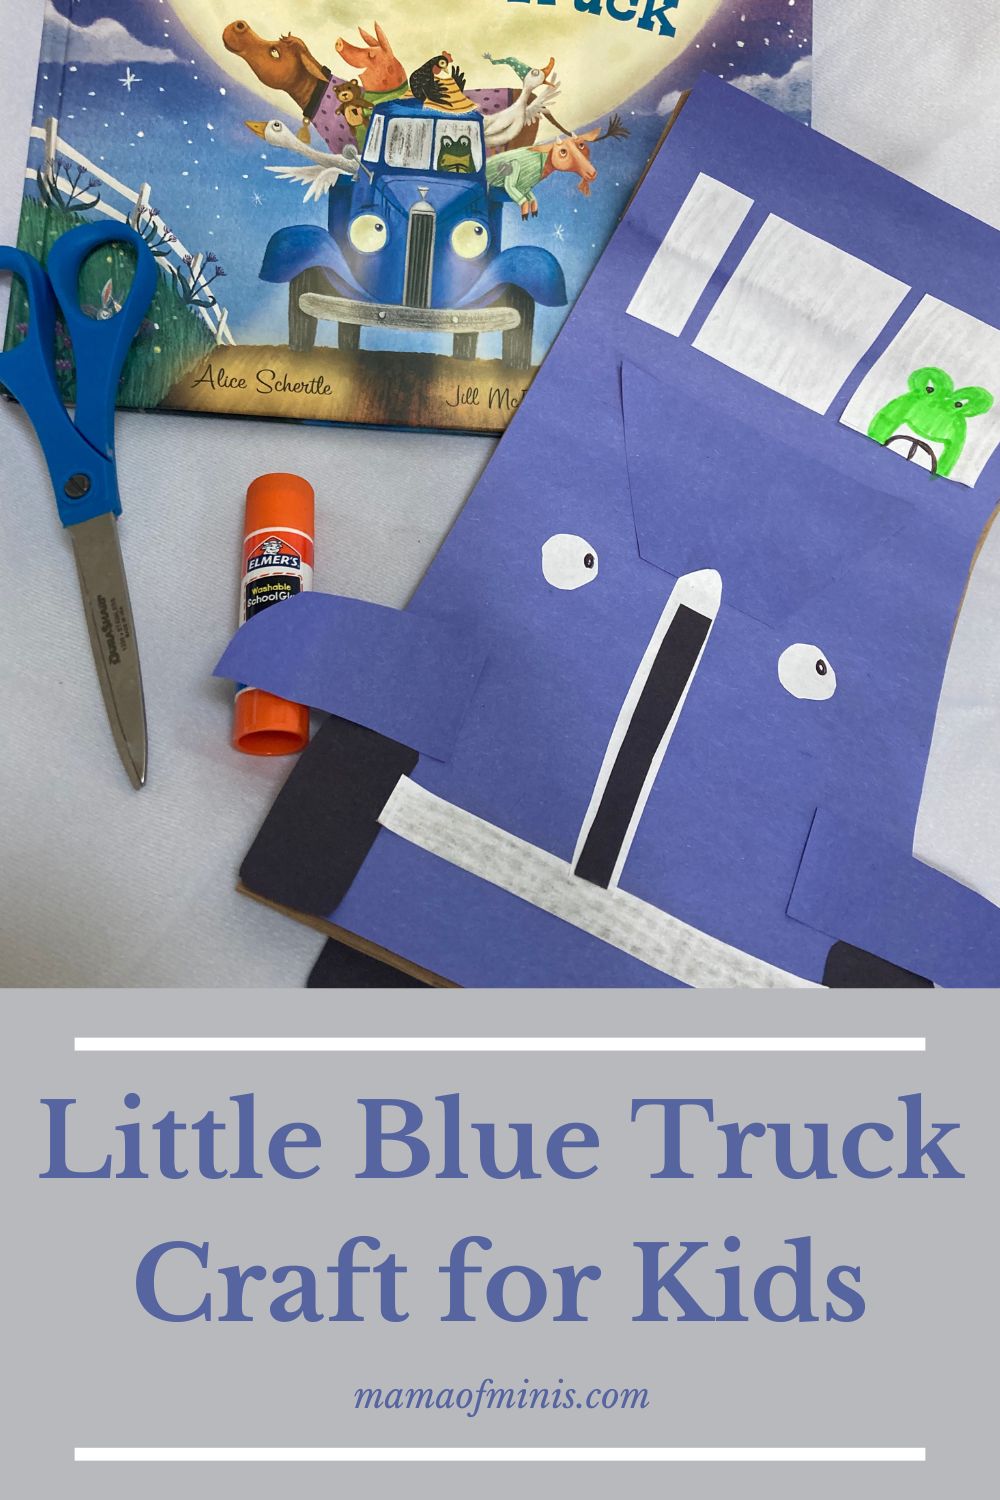 Little Blue Truck Craft for Kids